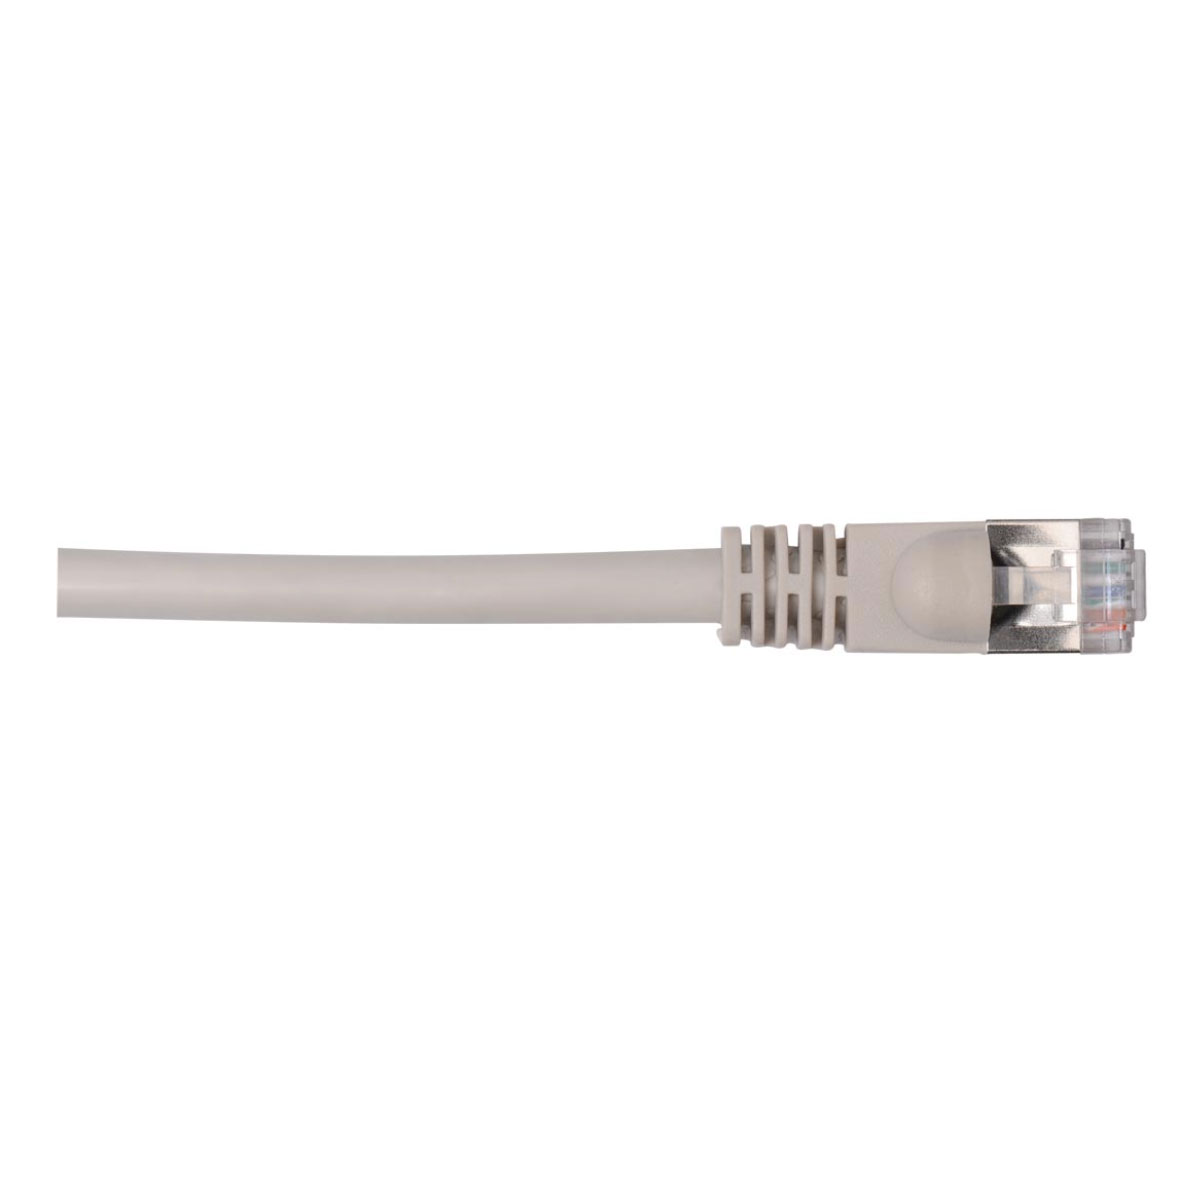 Cable de conexión prefabricado blindado de categoría 6A para soluciones LAN